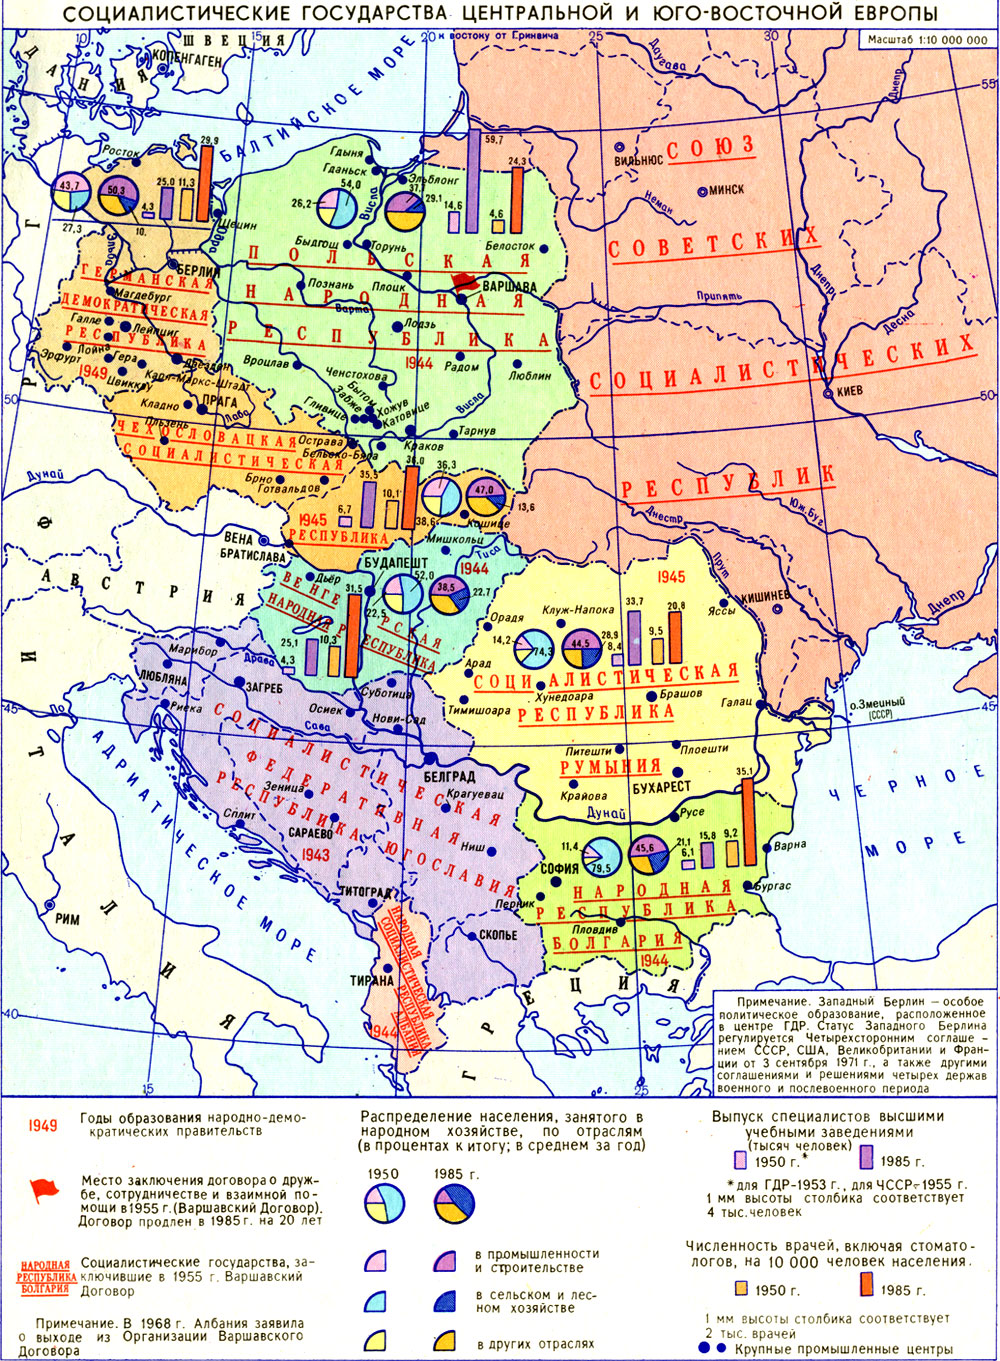 Социалистические государства центральной и юго-восточной Европы